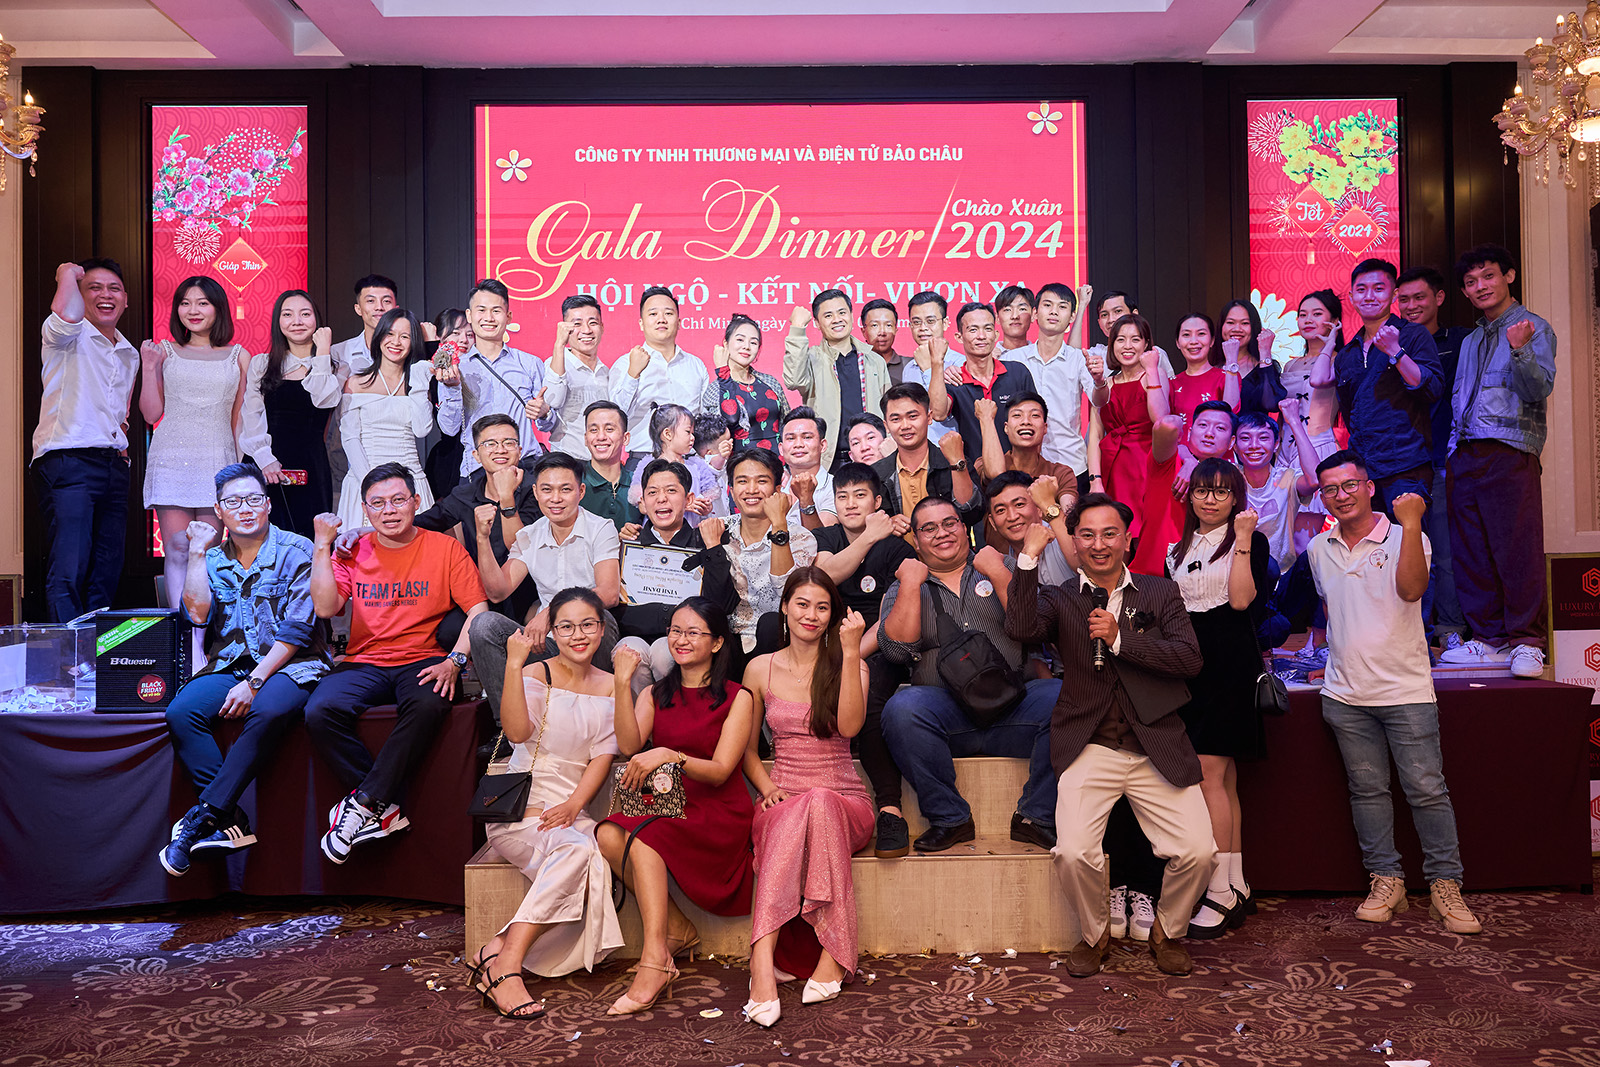 Gala Dinner 2024: Hội ngộ - Kết nối - Vươn xa